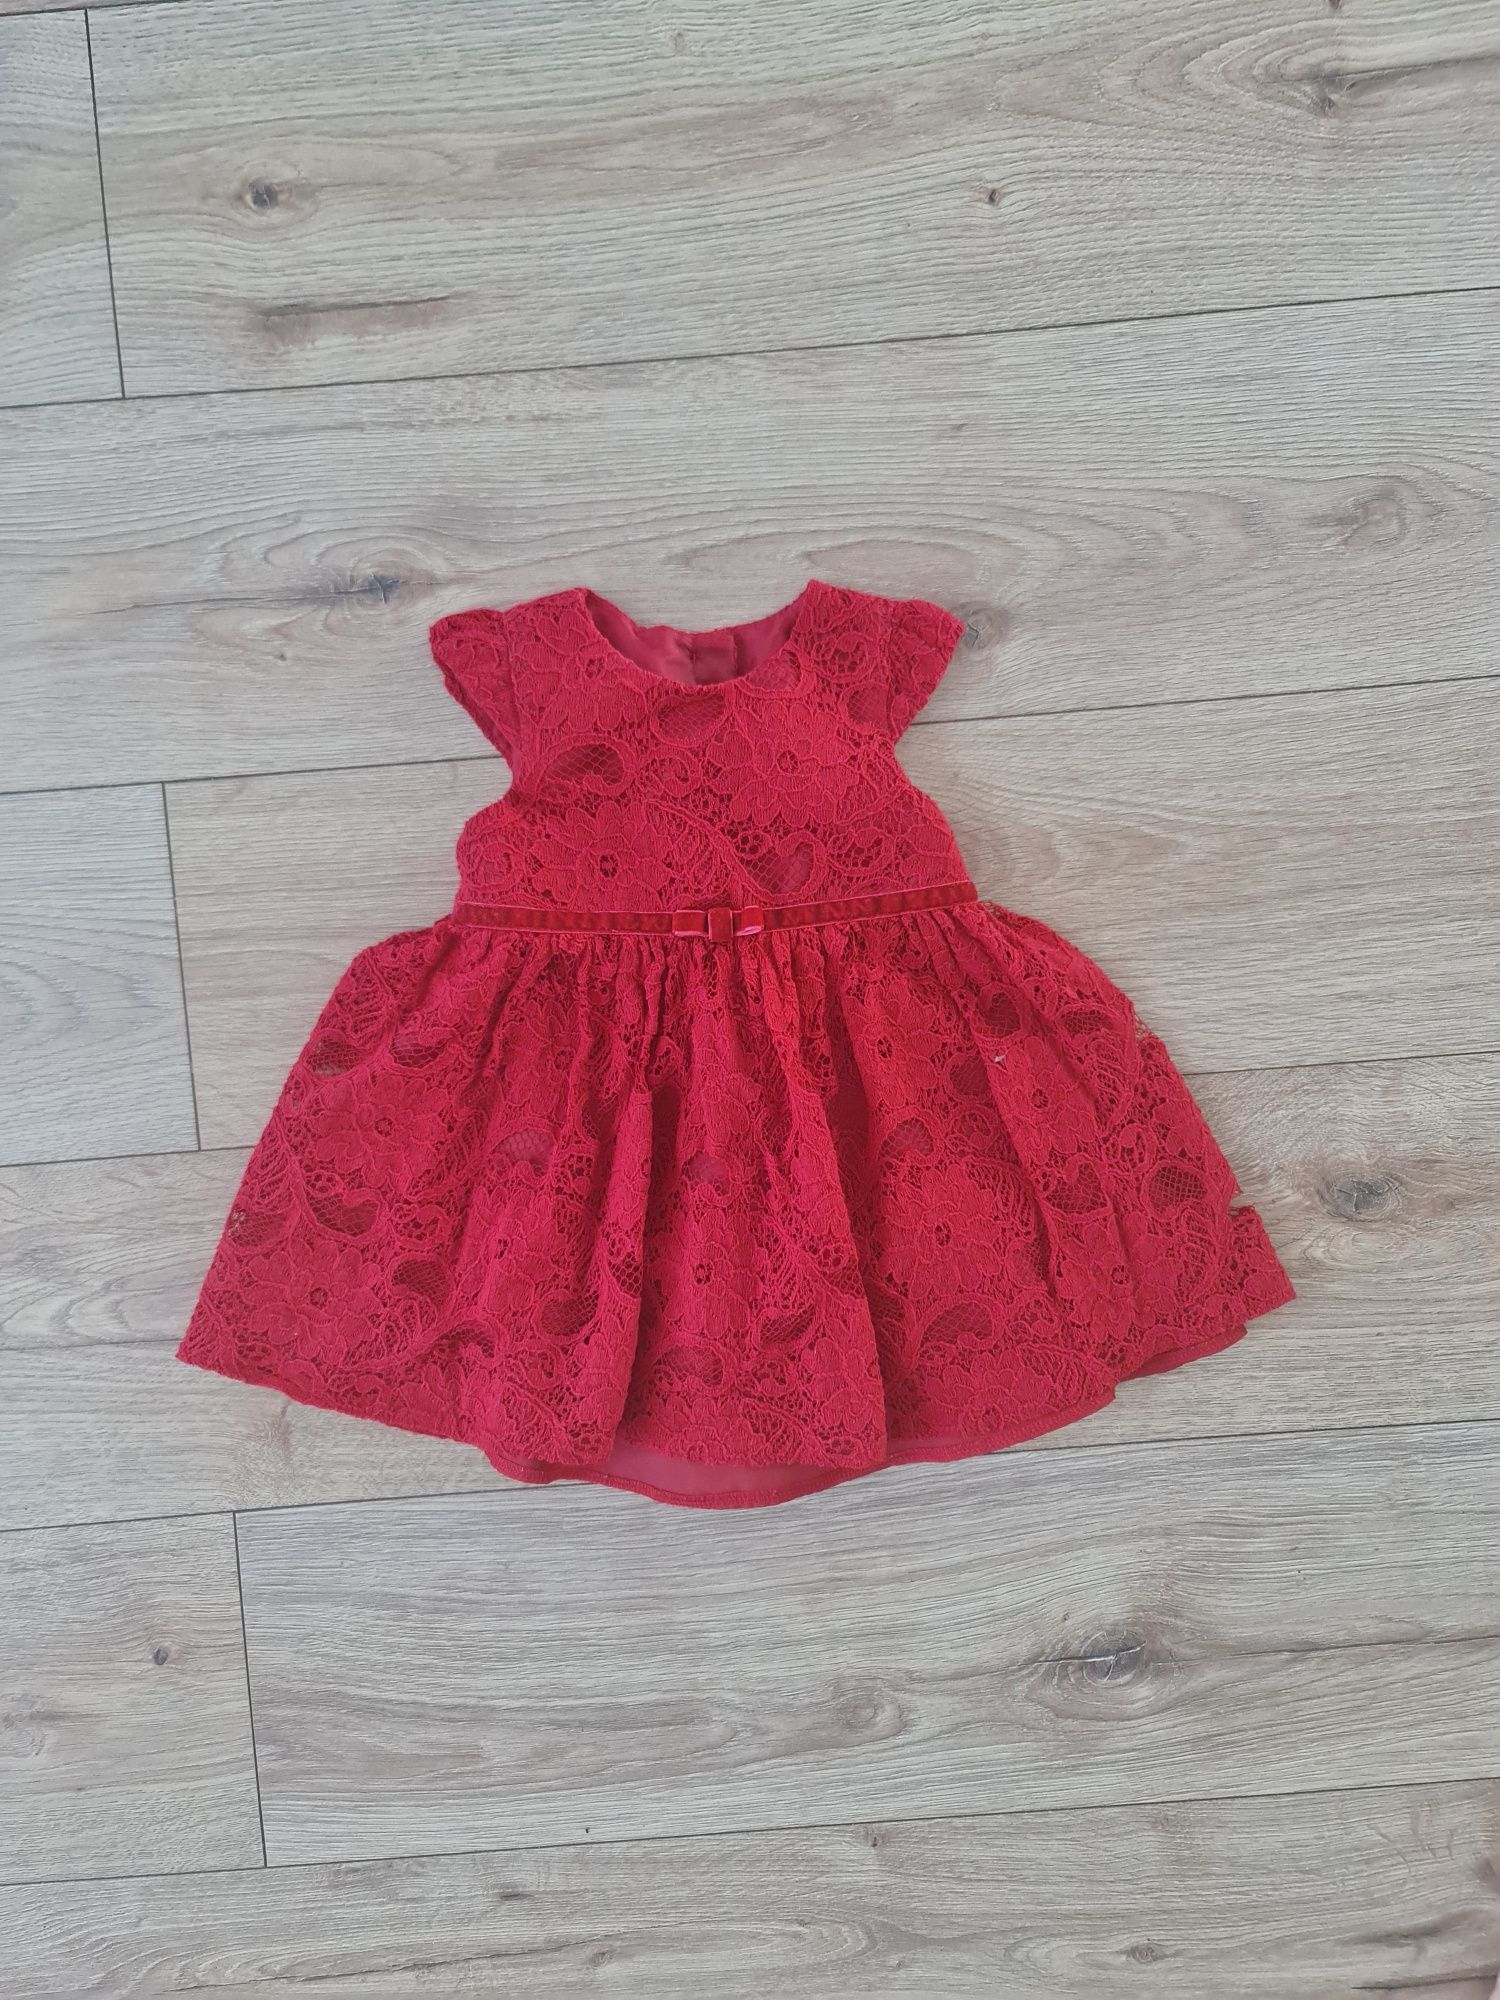 Sukienka czerwona koronkowa, 62cm